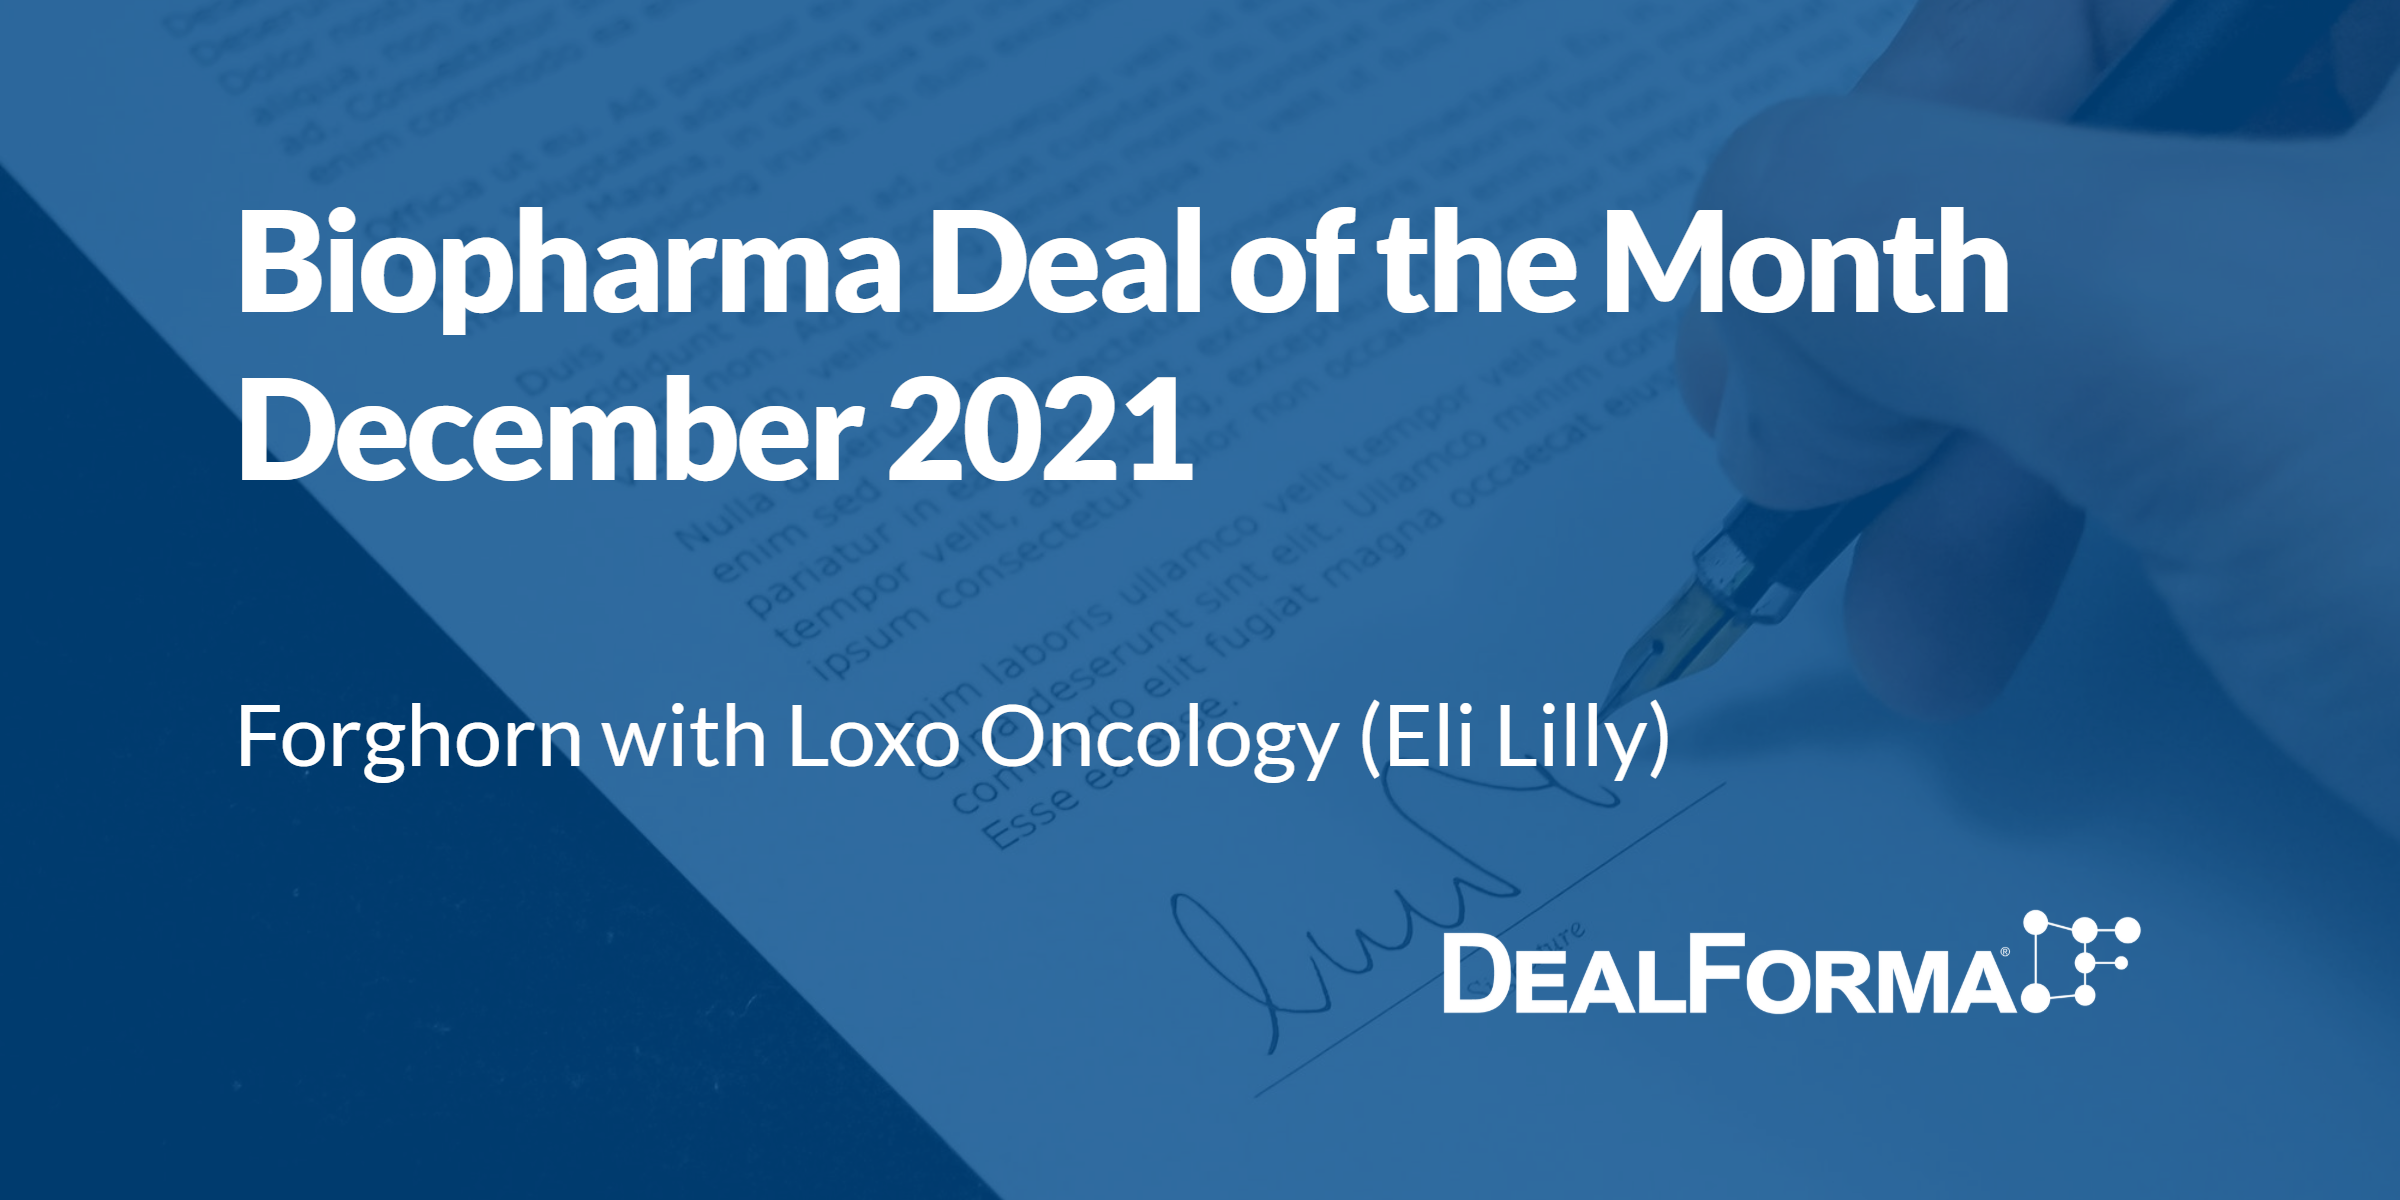 Top biopharma deal upfront December 2021